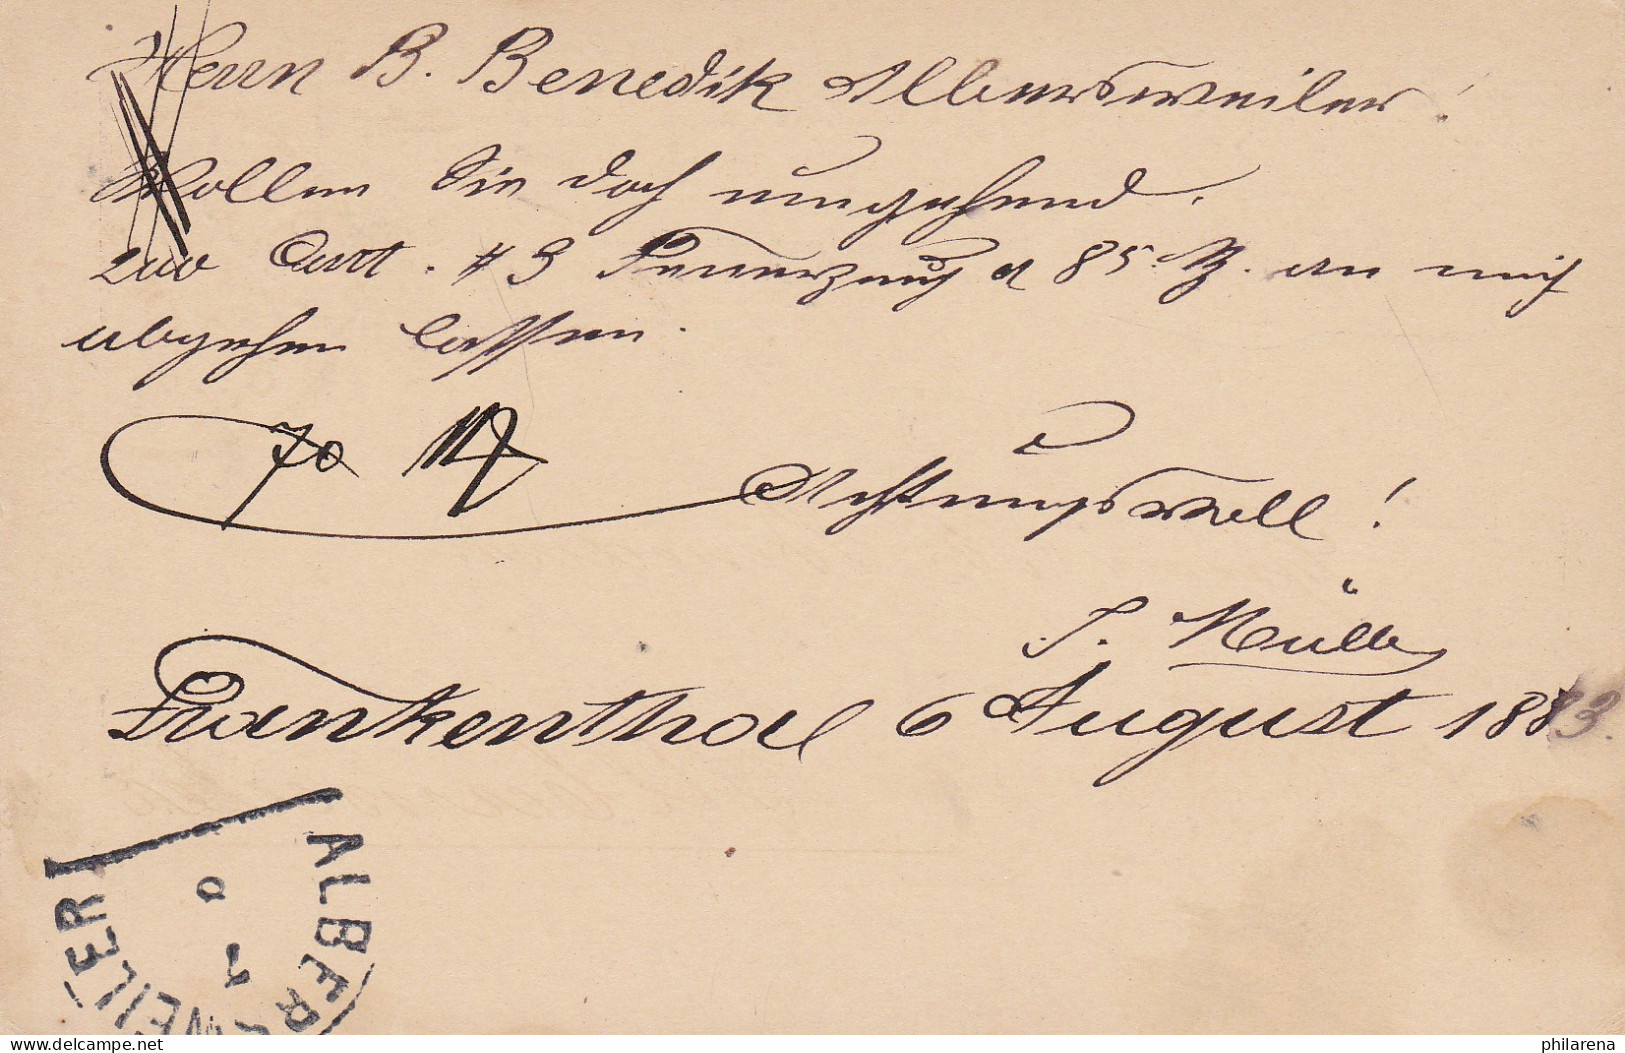 Bayern: 1883, Postkarte Von Frankfurt/M Nach Albersweiler - Briefe U. Dokumente